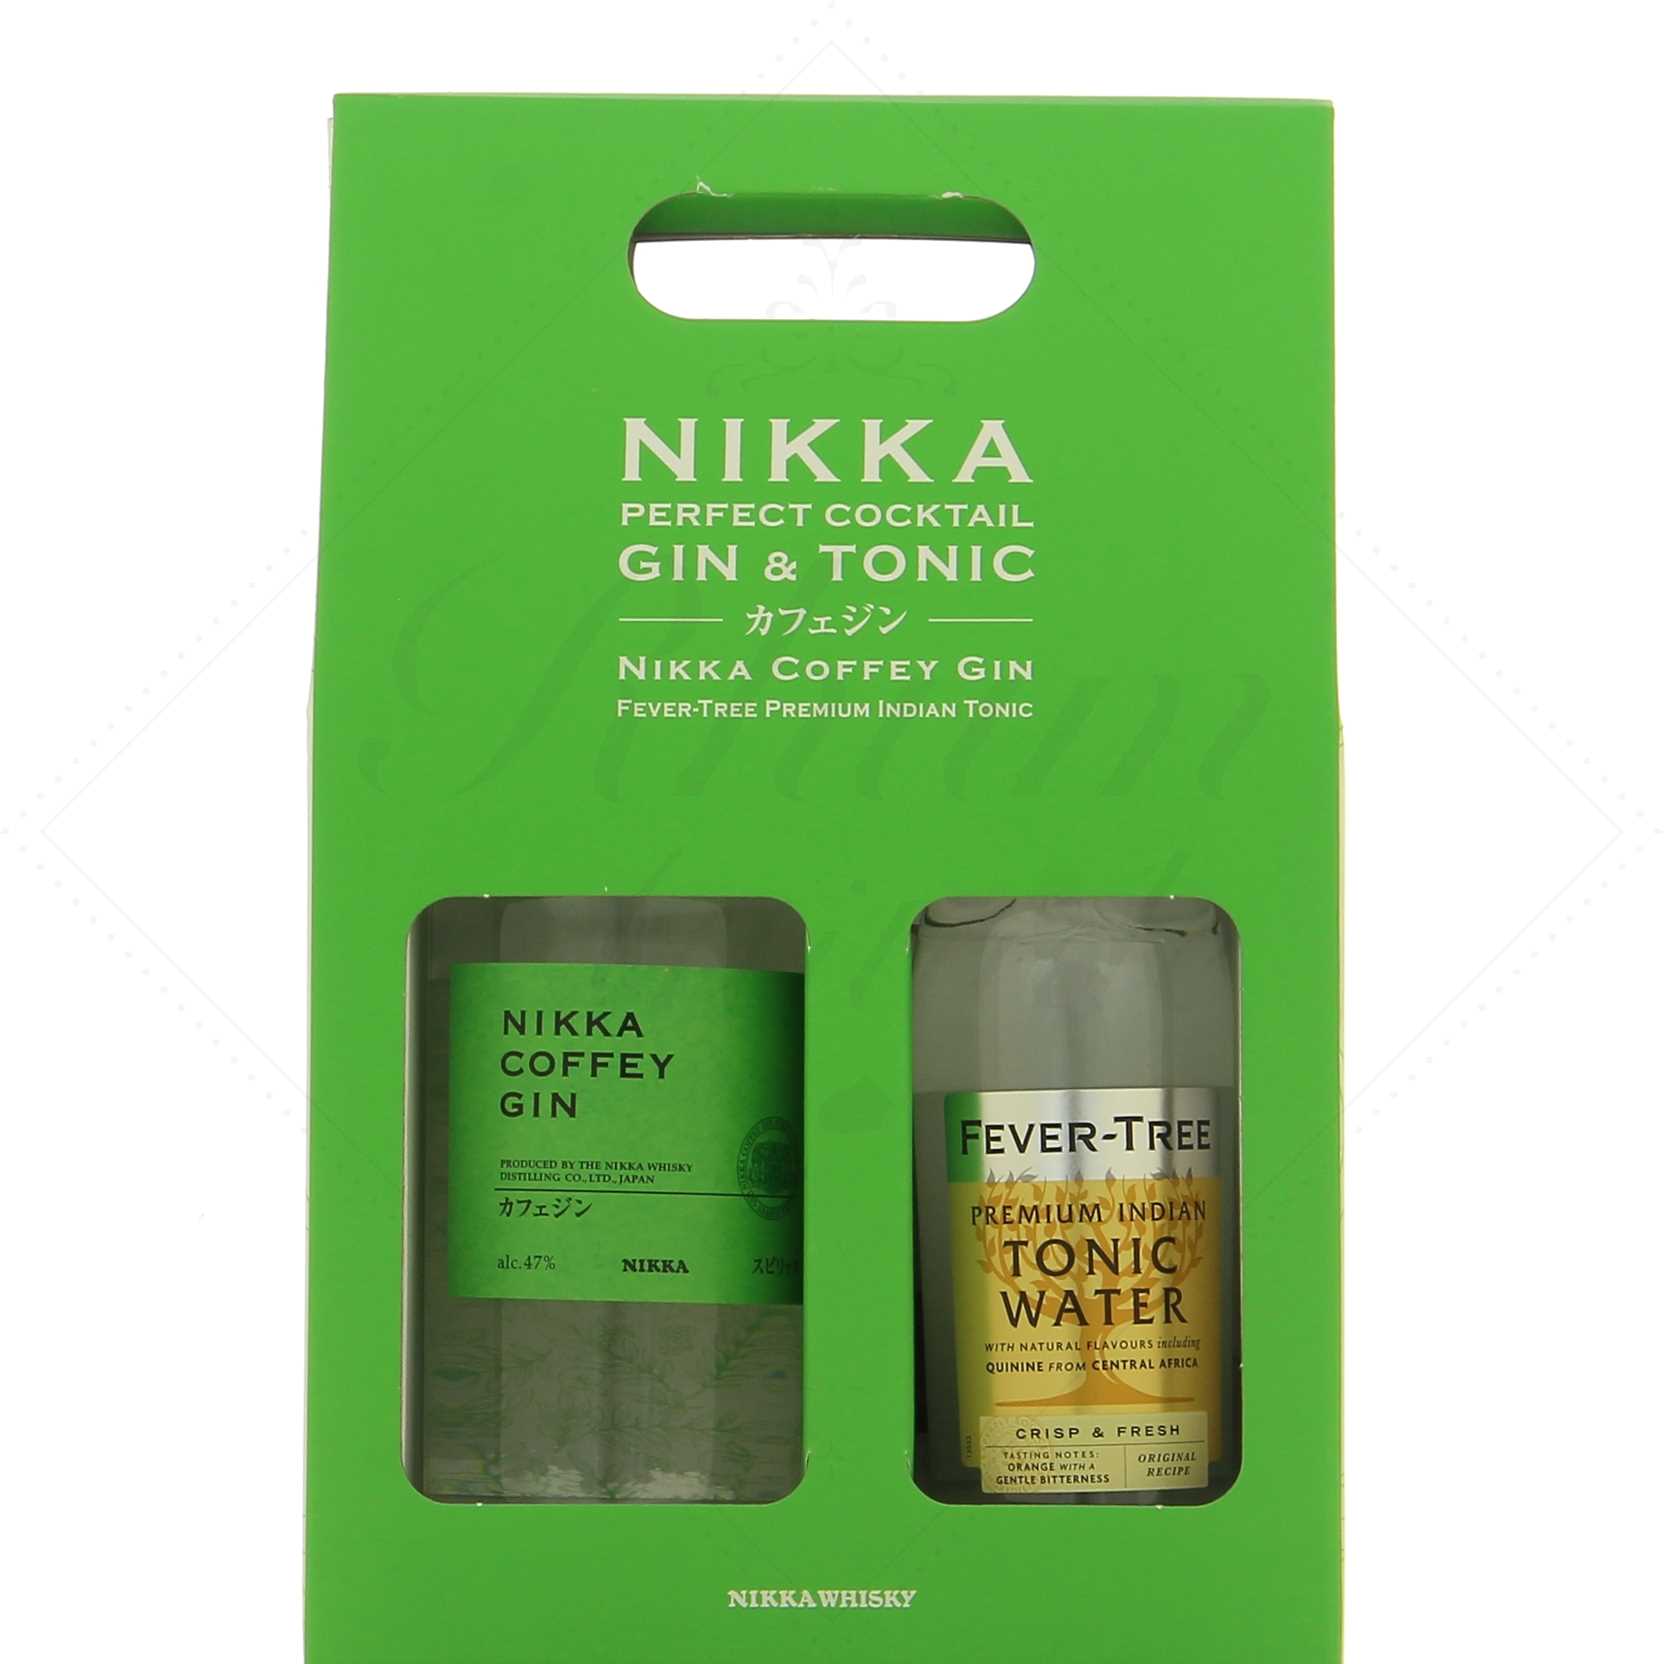 Nikka Coffret Gin x Fever Tree Gin Tonic